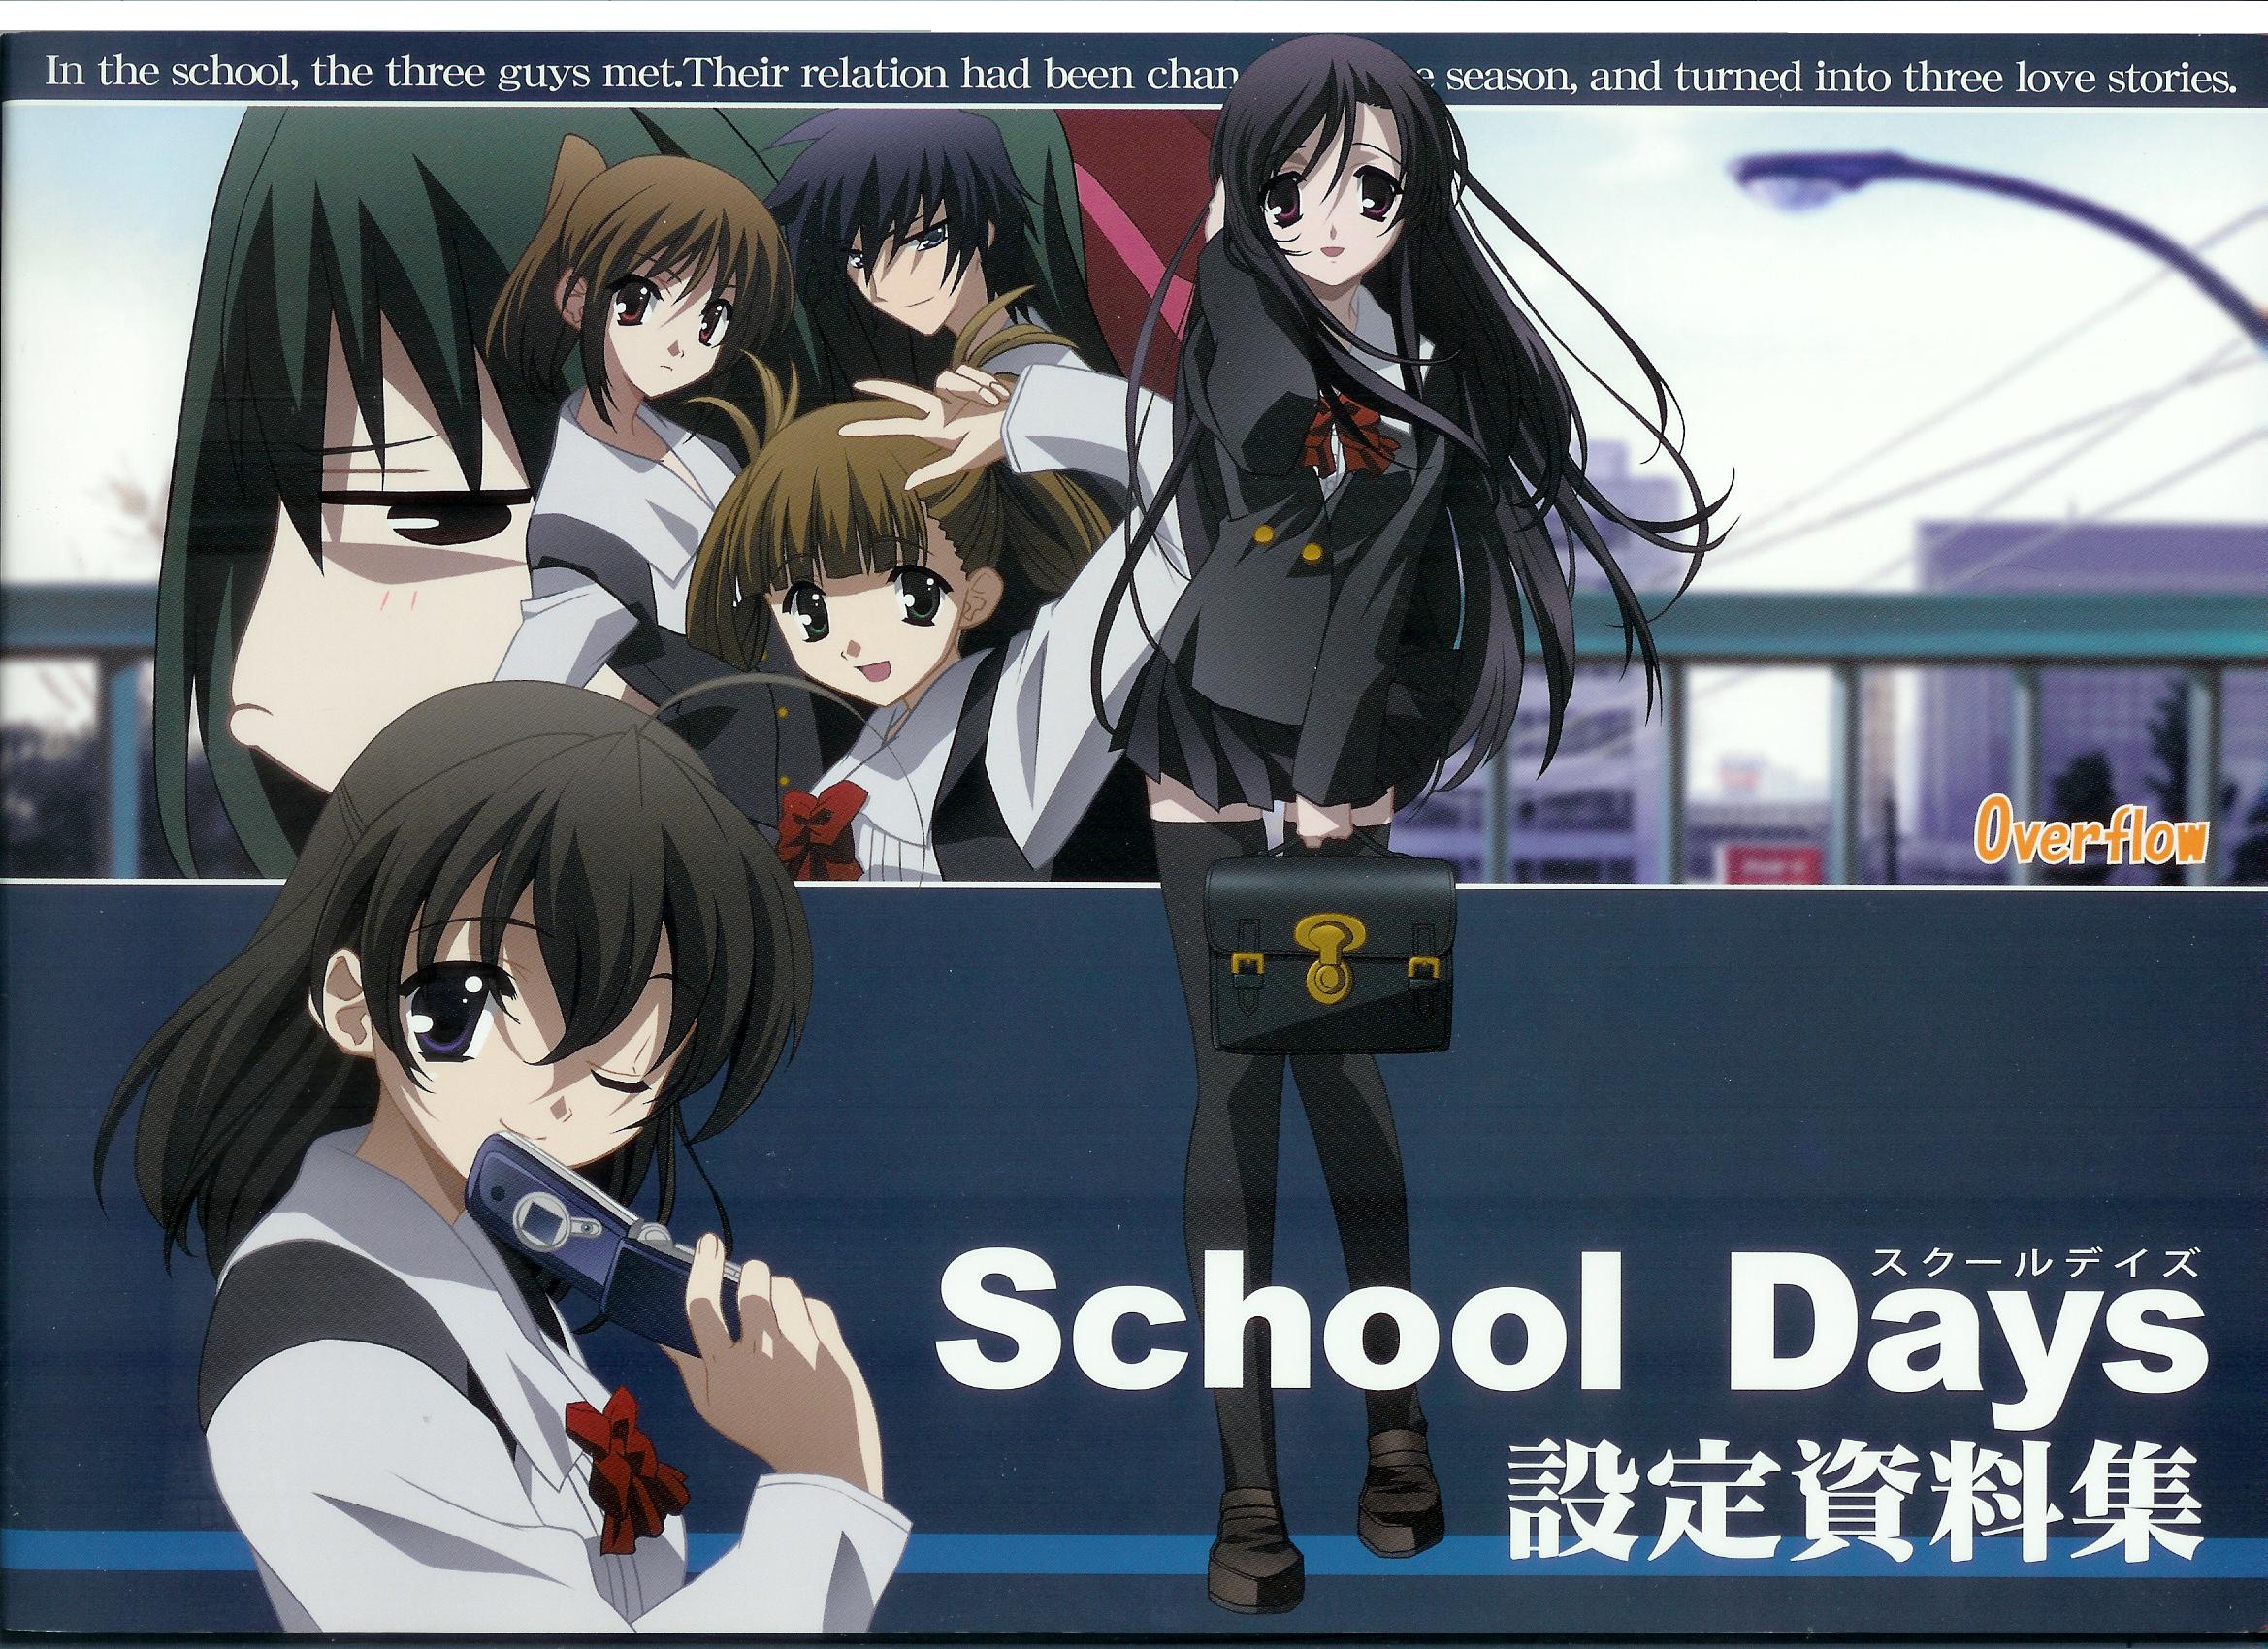 School Days Wallpaper Zerochan Anime Image Board